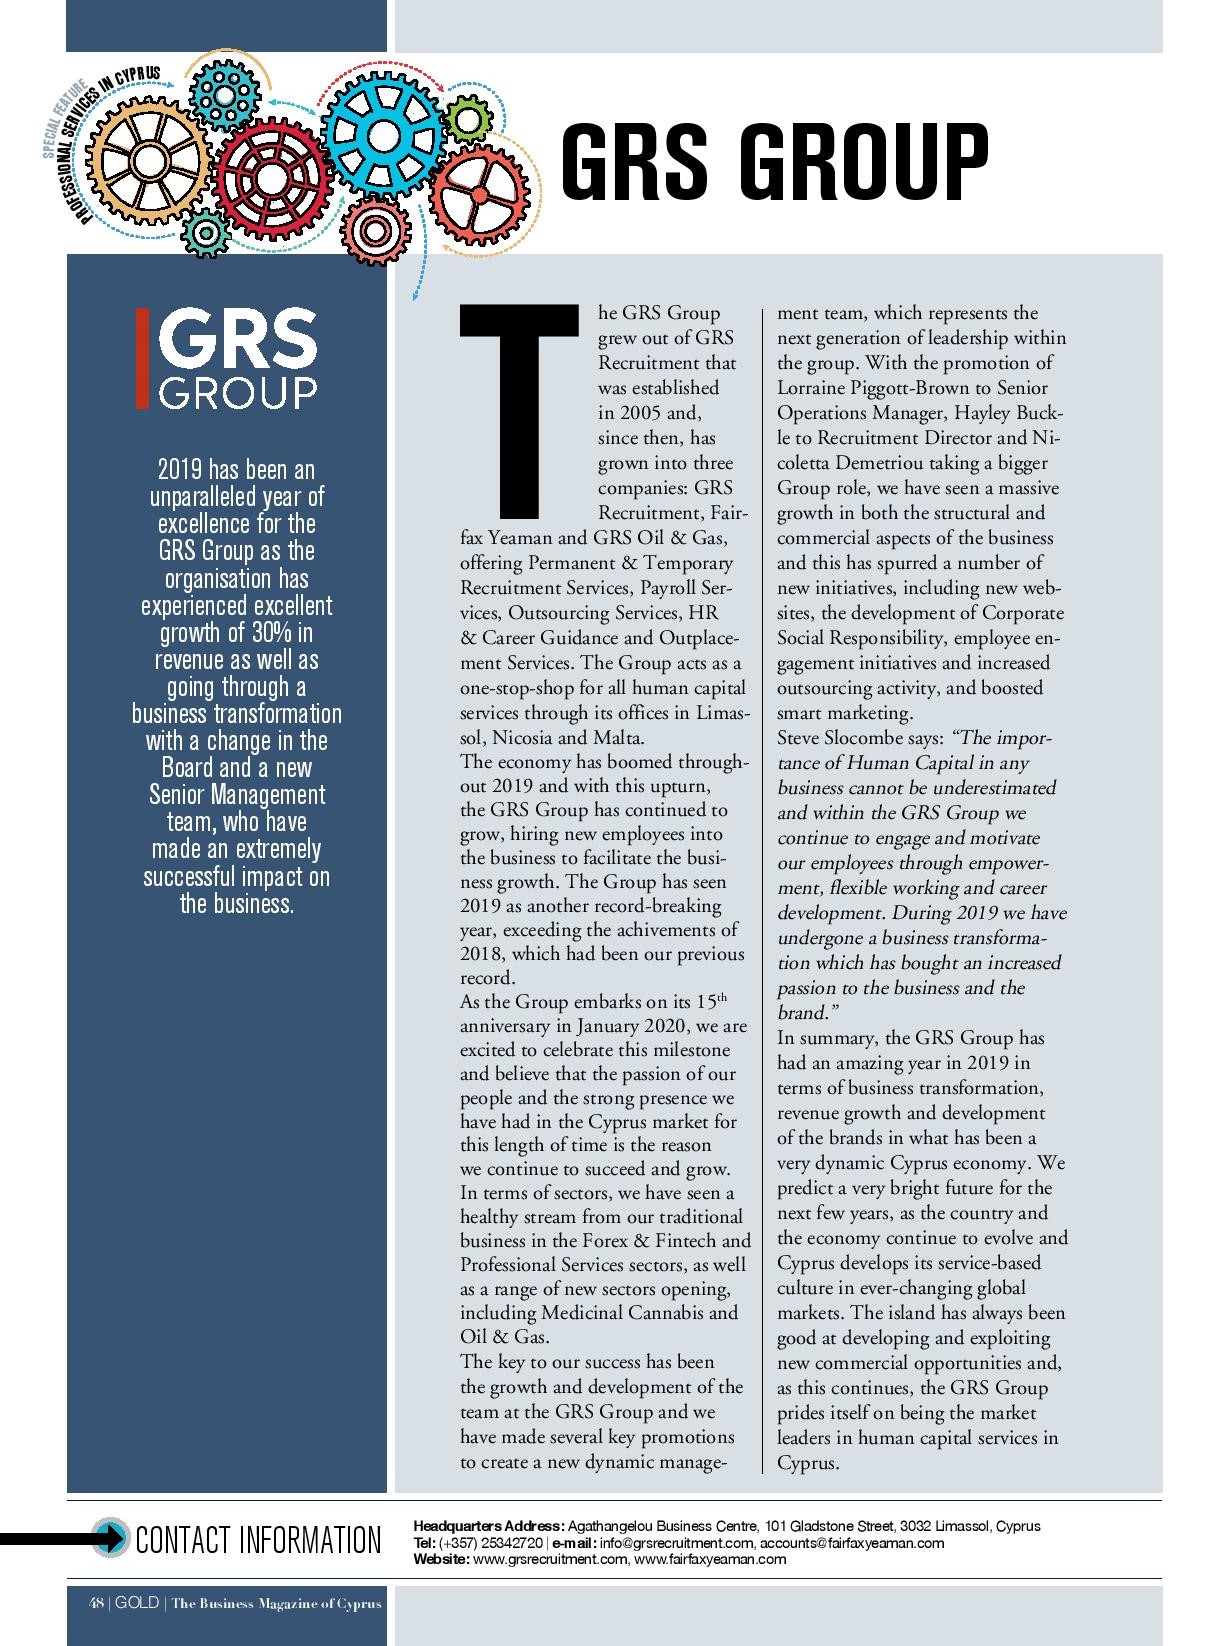 GRS Group: News Update December 2019